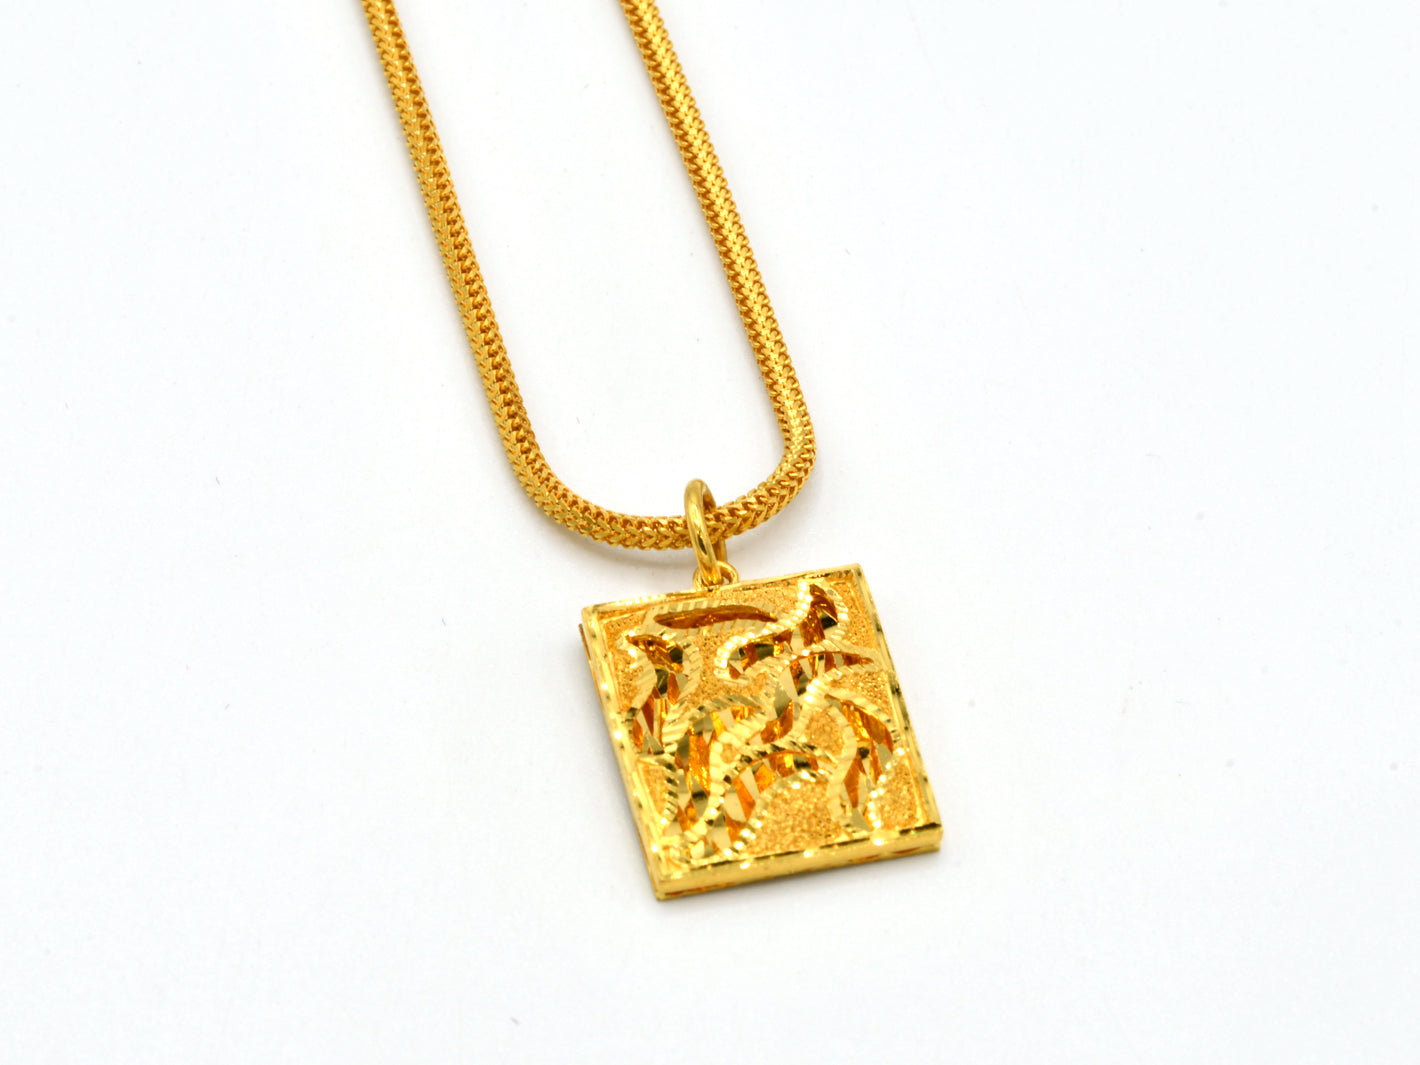 22ct Gold Pendant - Roop Darshan